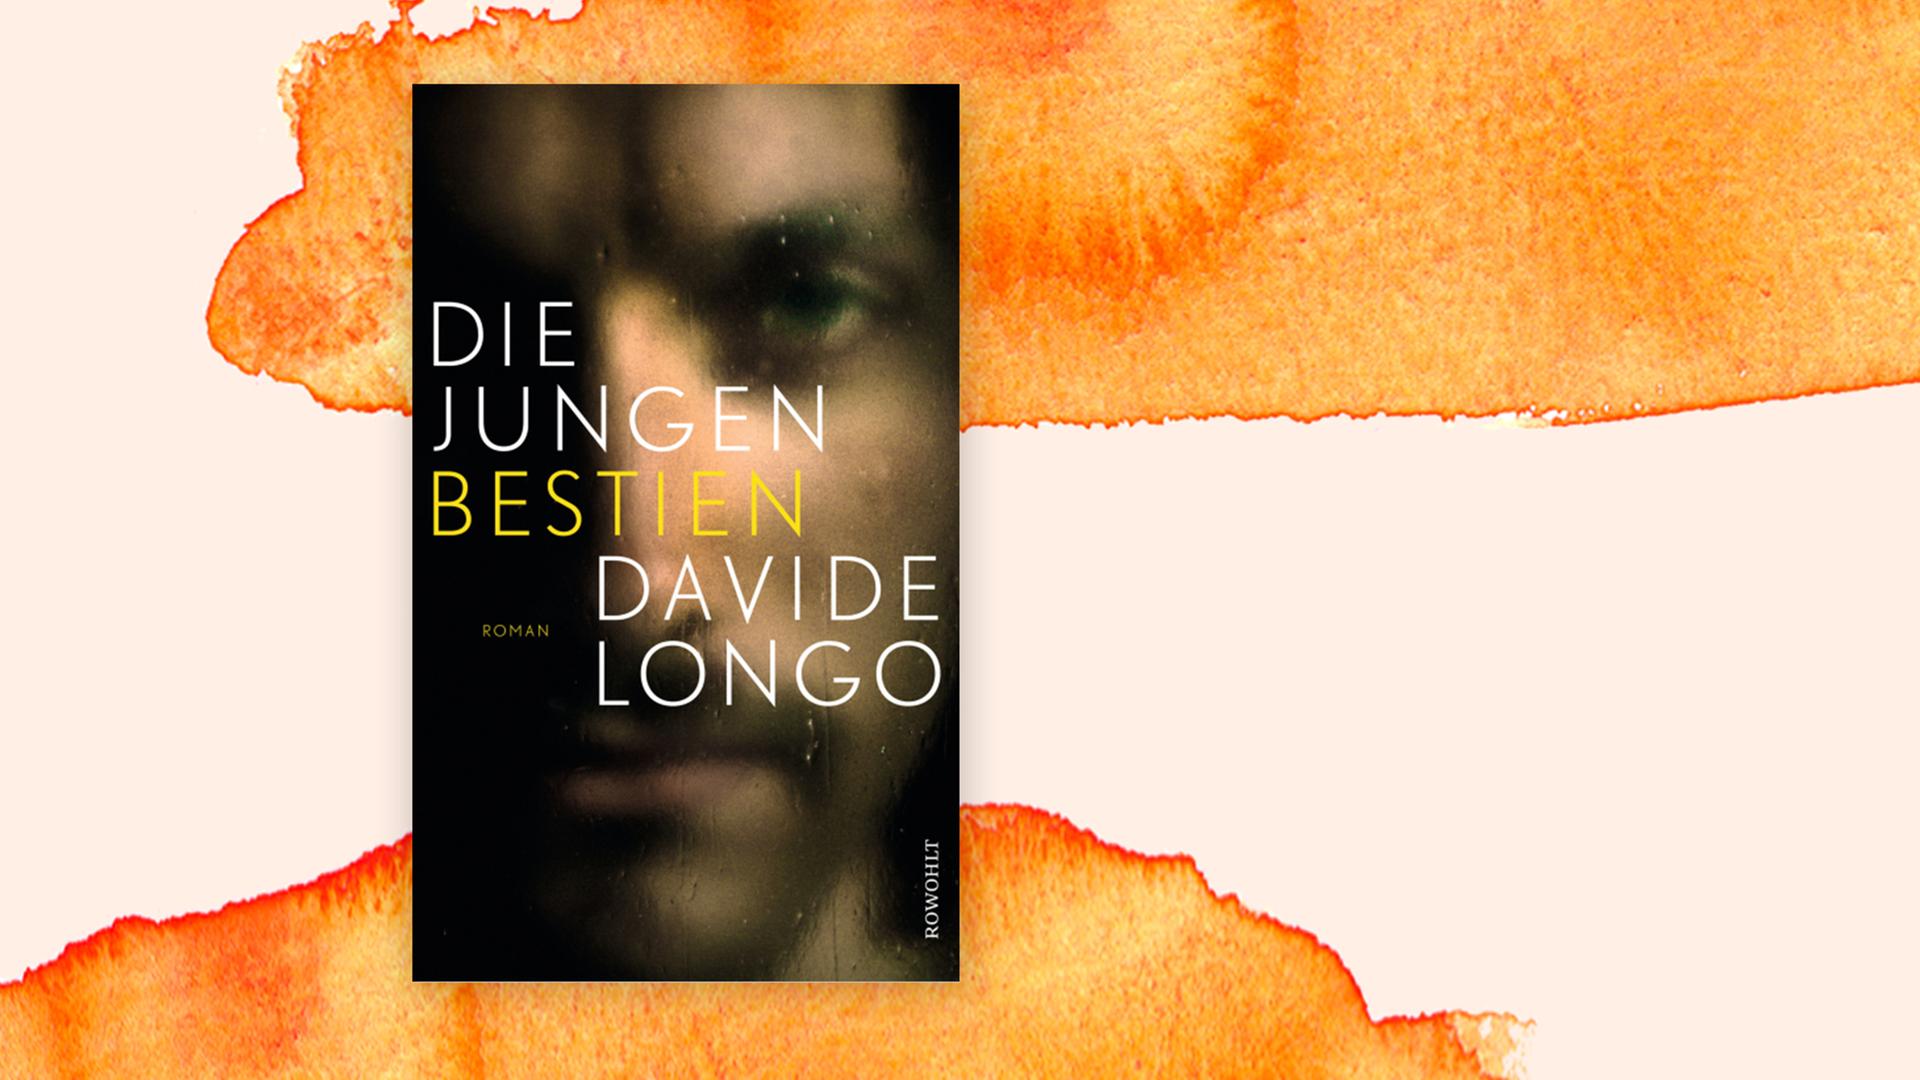 Das Cover des neuen Buches von Davide Longo auf orangenem Grund.